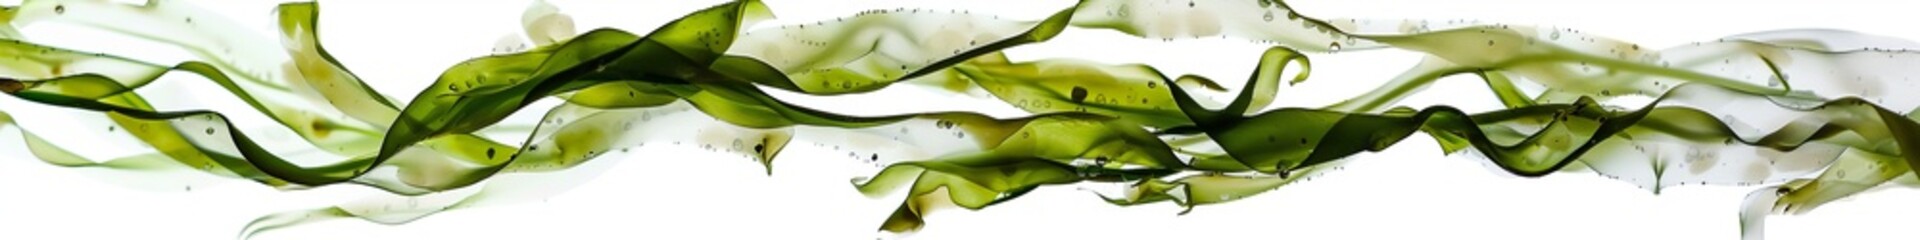 Algae on a white background isolated.